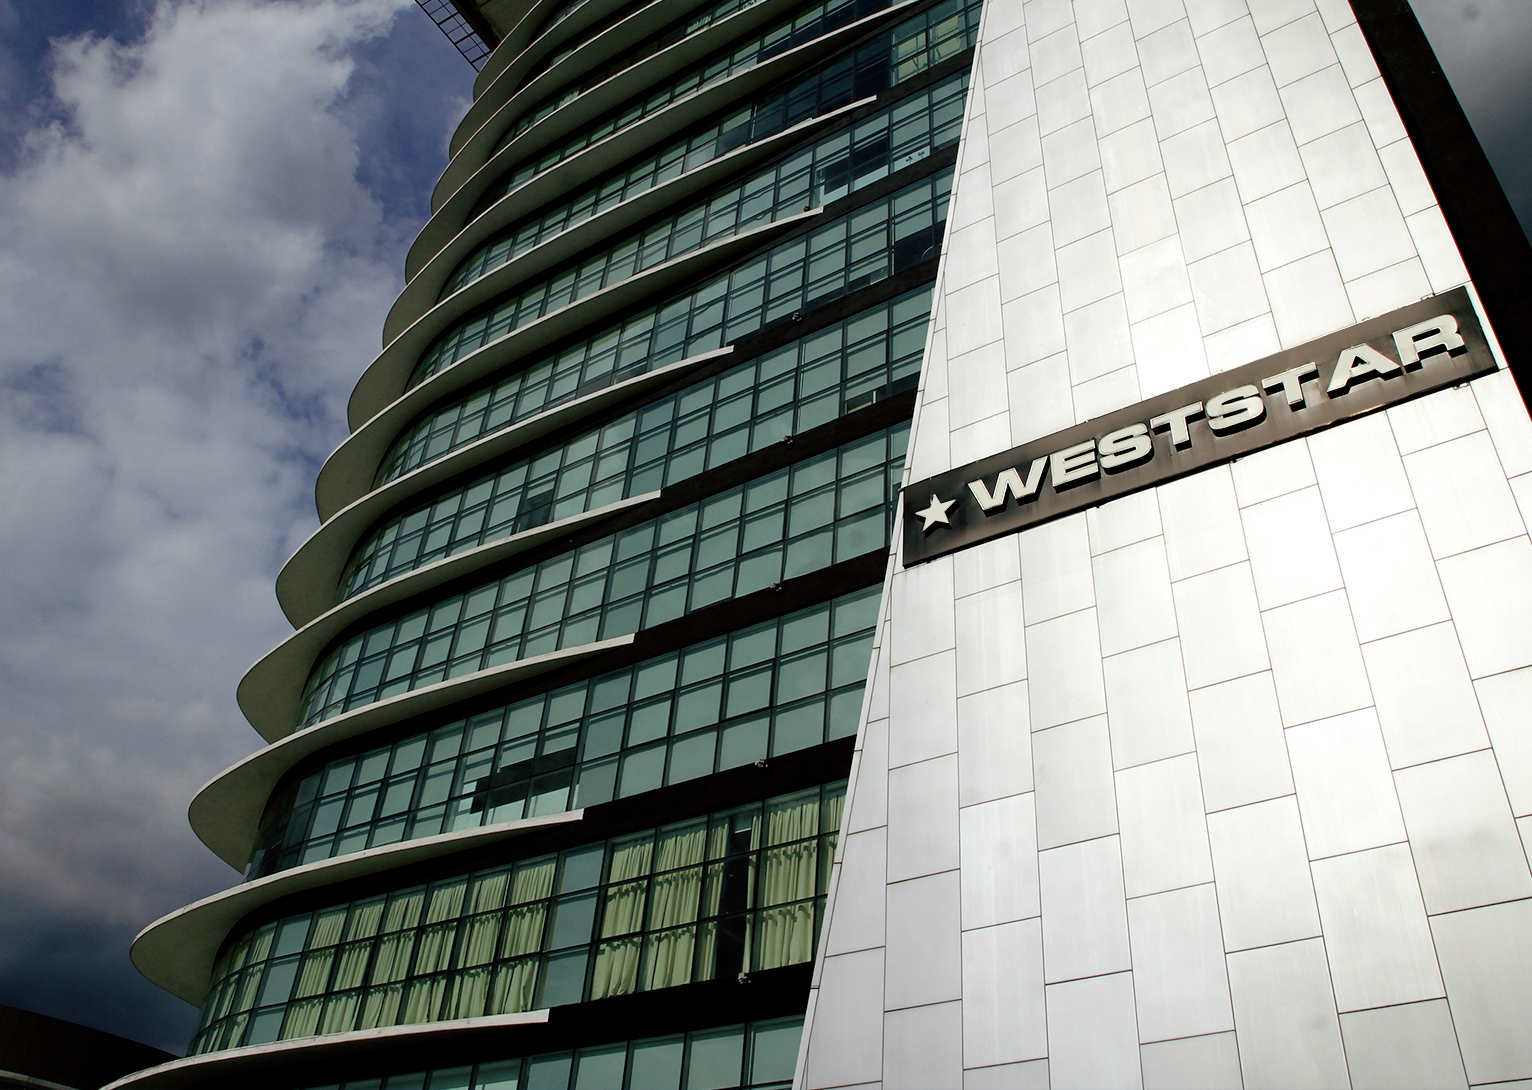 Weststar Properties